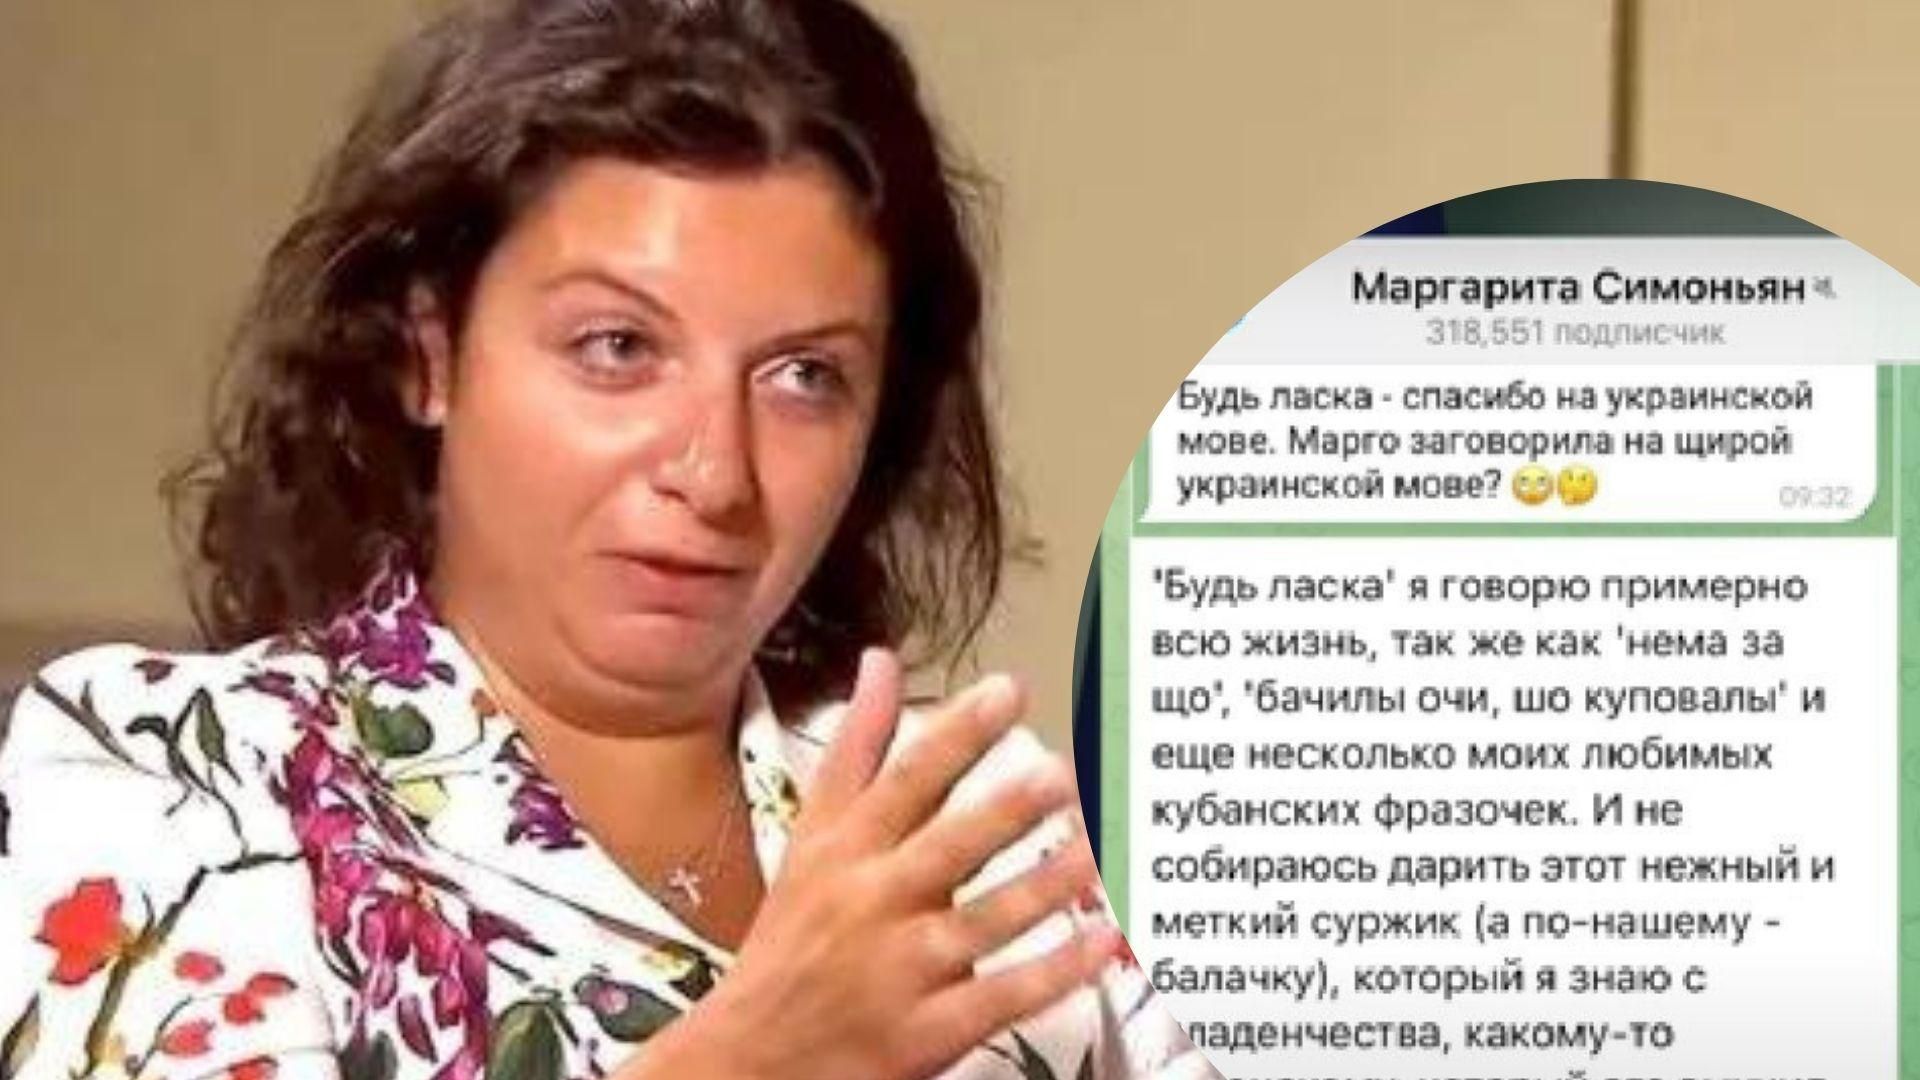 "Спасибо – це будь ласка": пропагандистка Симоньян вчергове осоромилась